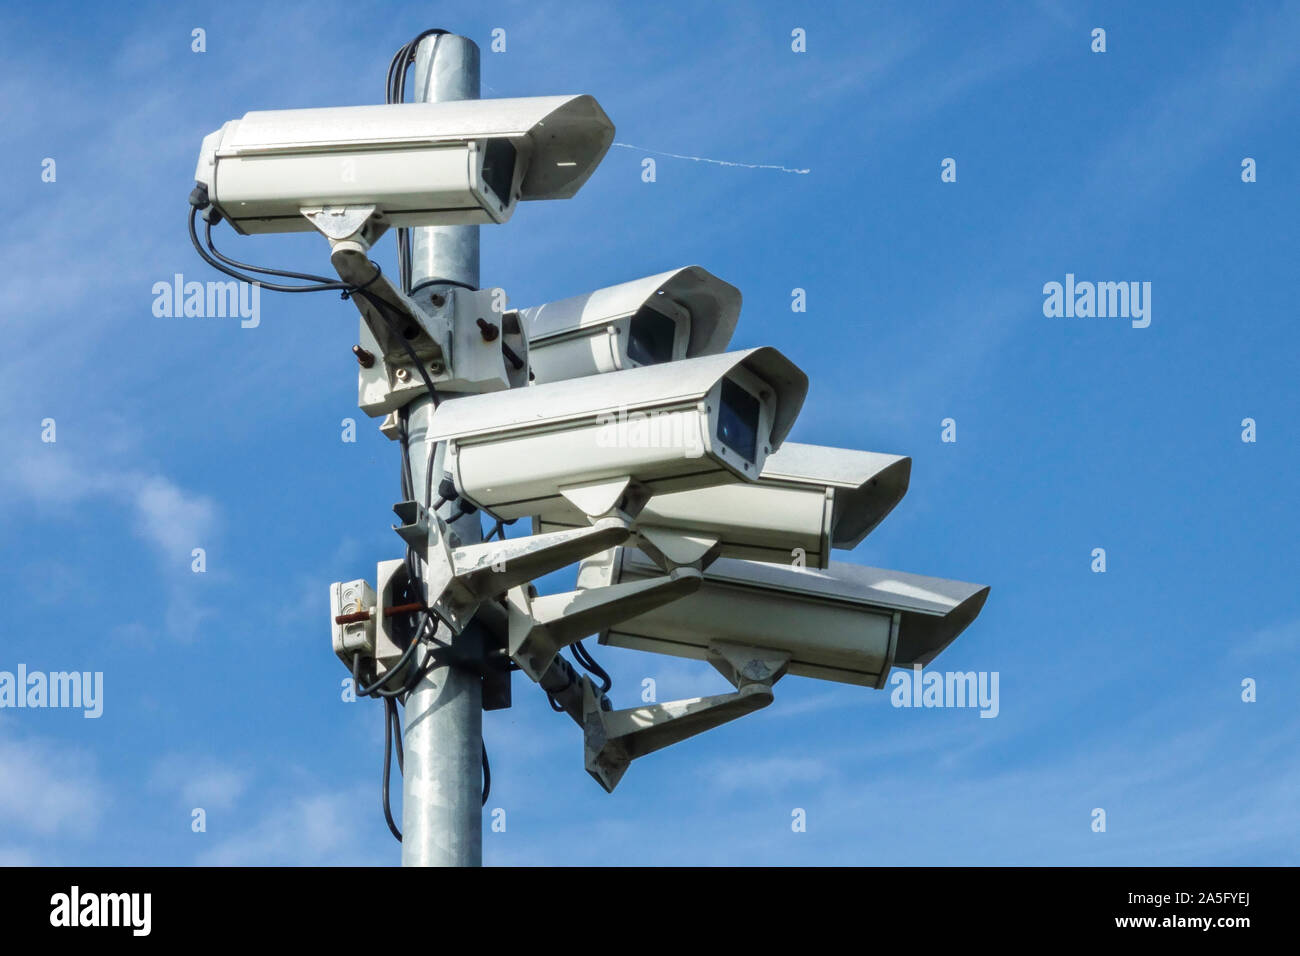 Telecamere CCTV Germania tecnologia di riconoscimento, monitoraggio dello spazio pubblico, CCTV telecamera di pubblica sicurezza Foto Stock